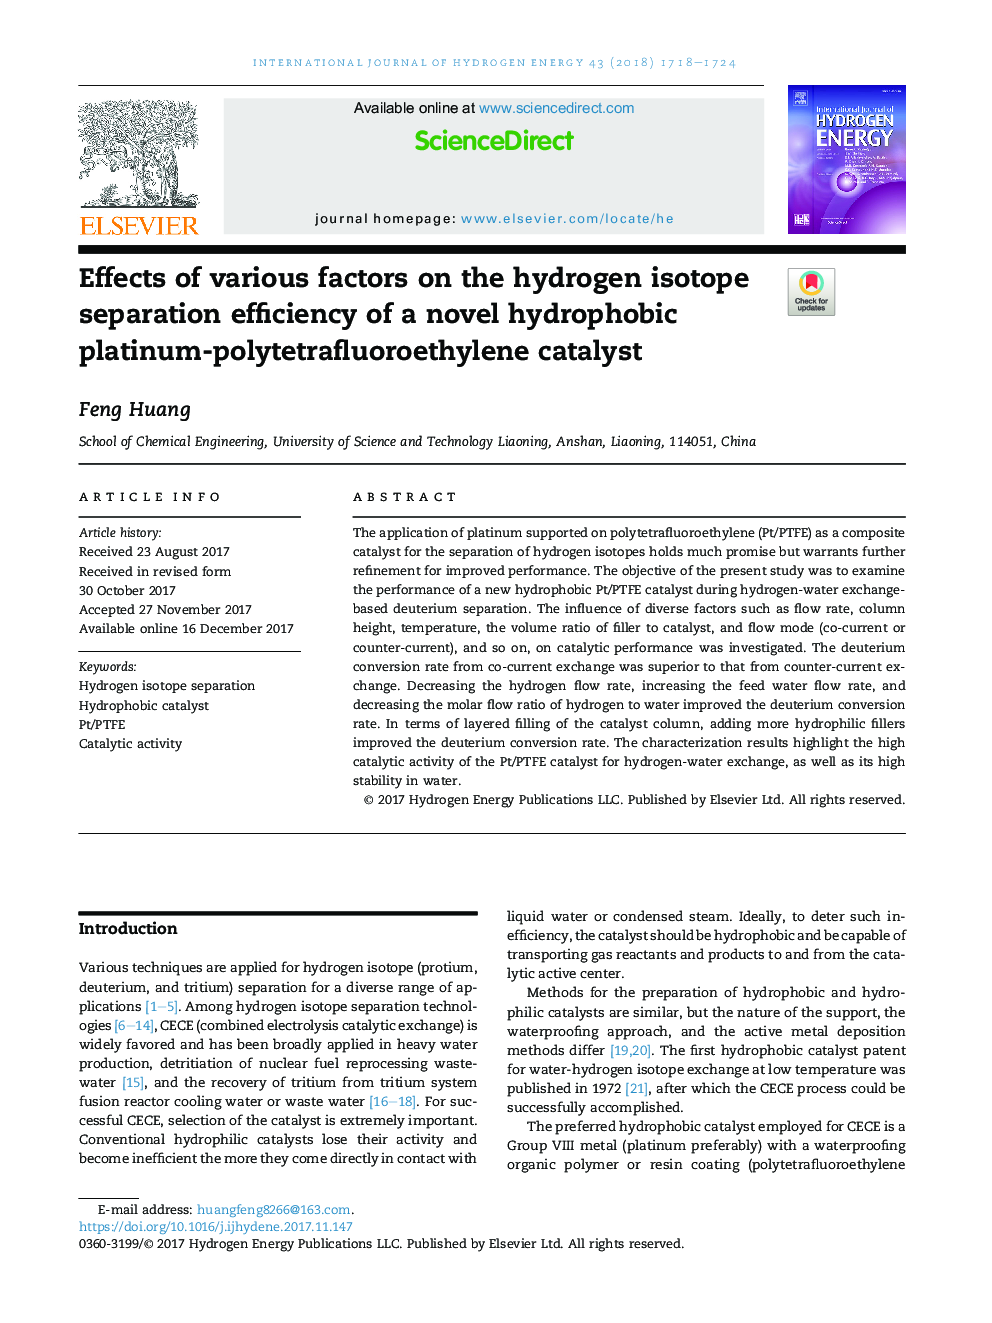 اثرات عوامل مختلف بر کارایی جداسازی ایزوتوپ هیدروژنی یک کاتالیزور پلاتین-پلی تترافلوواتو اتیلن جدید هیدروفوبیک 